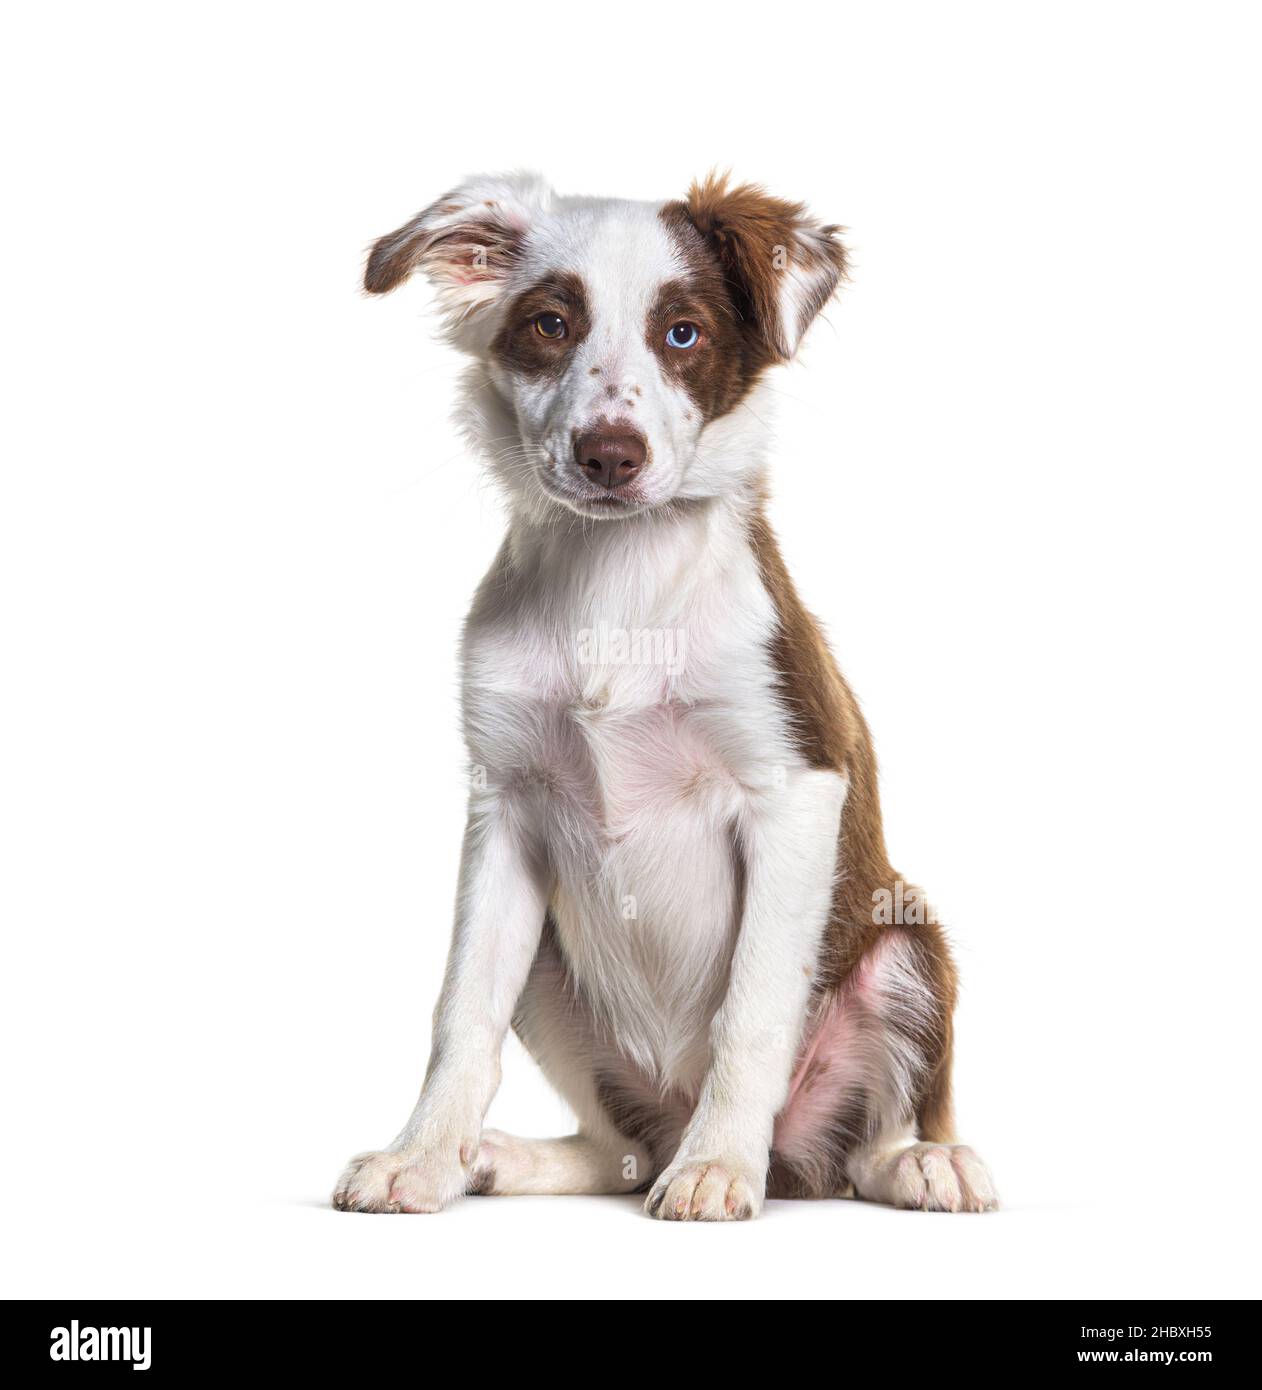 ODD-eyed marrone e bianco giovane bordo collie cane seduta, isolato su bianco Foto Stock